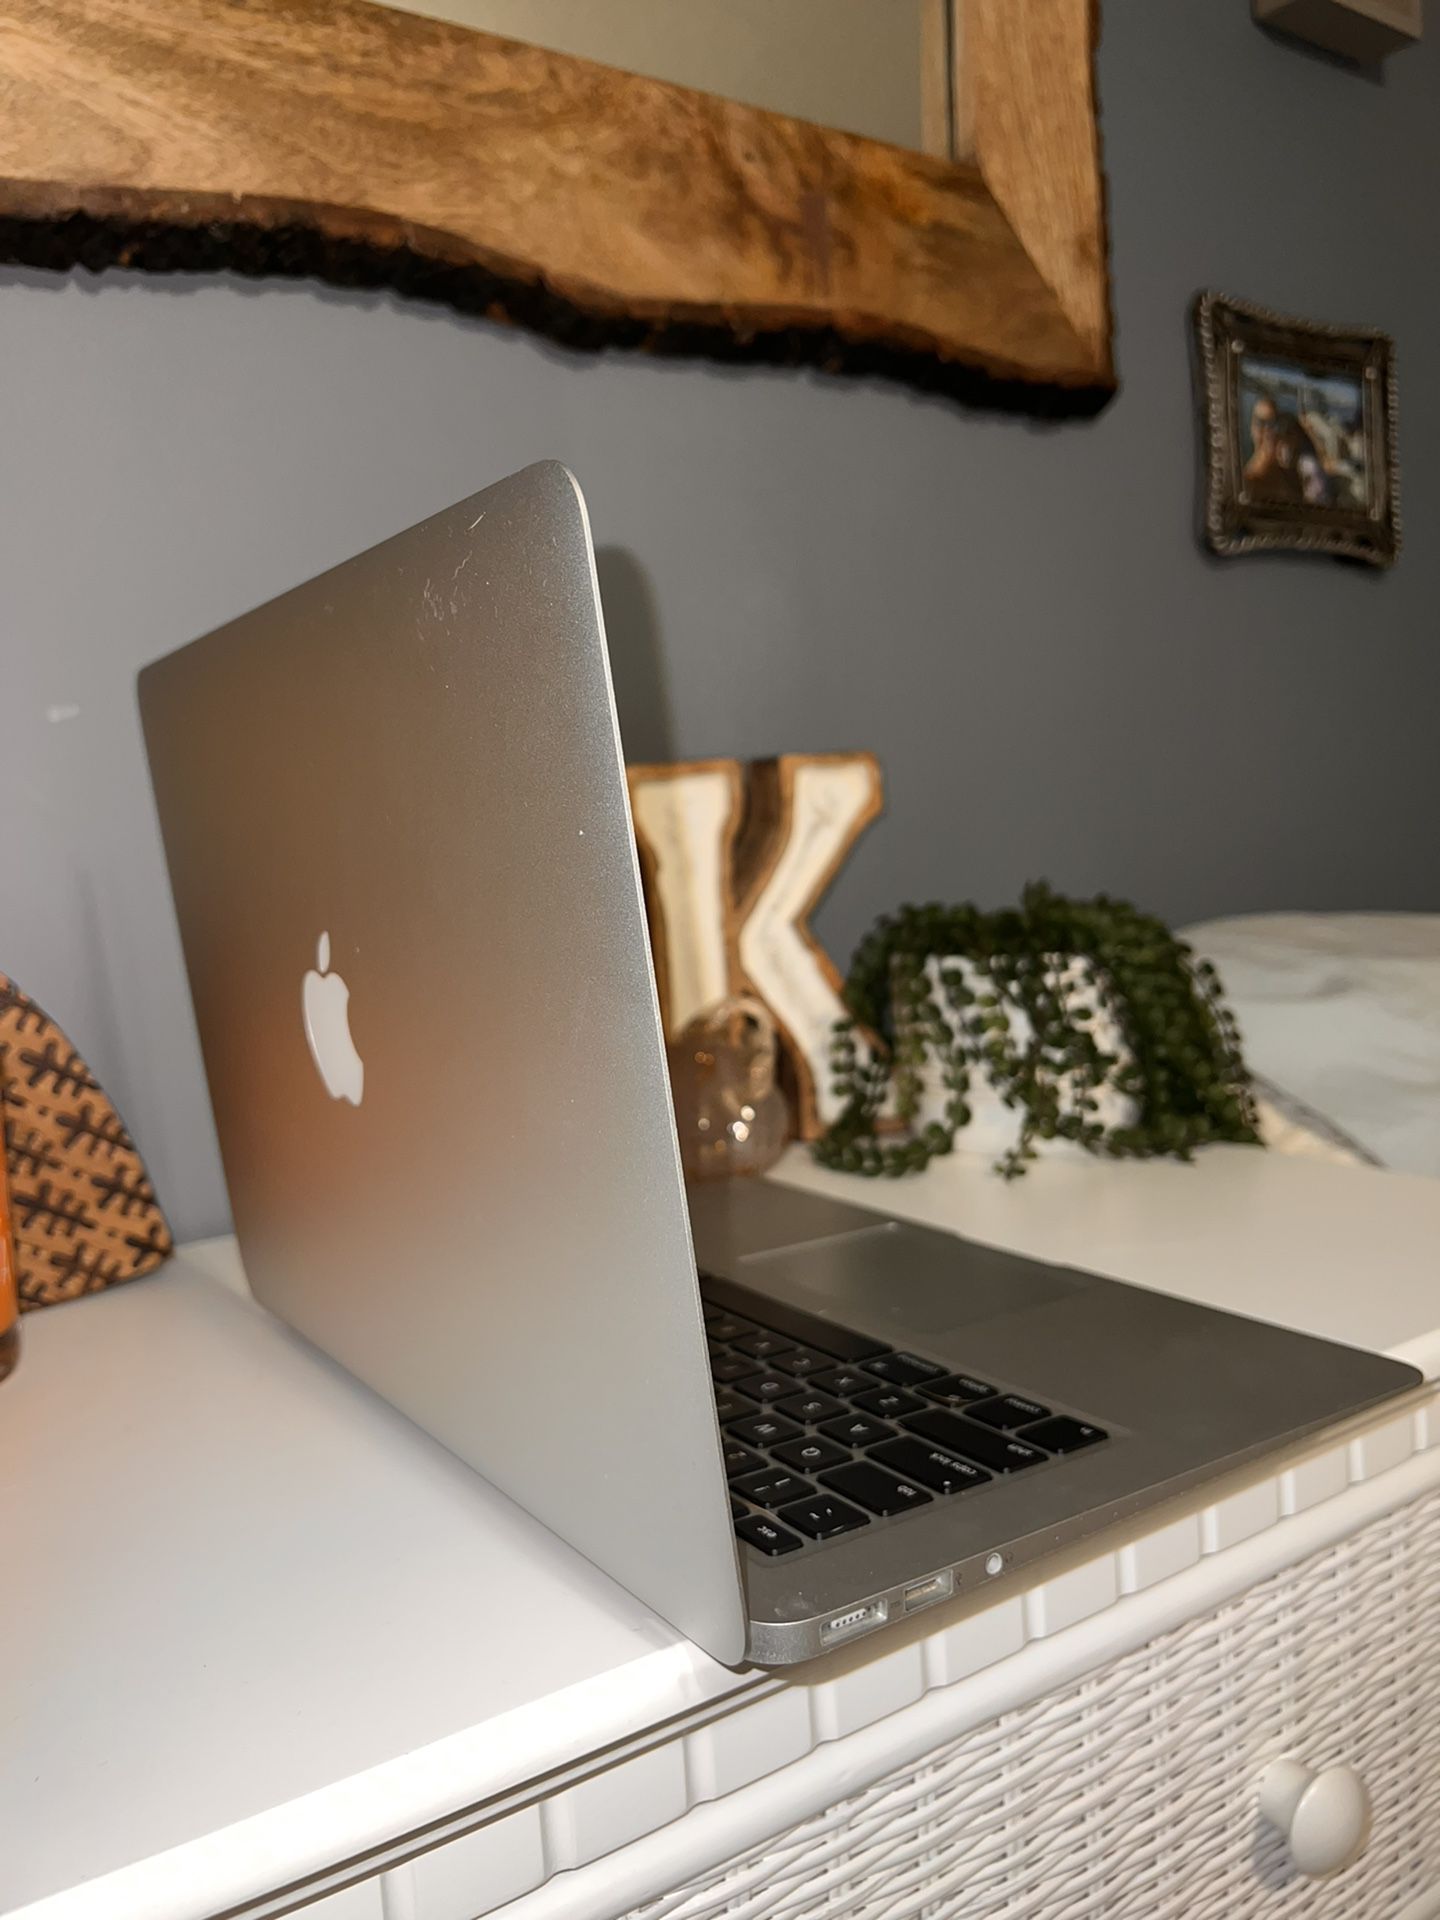 Apple MacBook Air "Core i5" 1.6 13-Inch